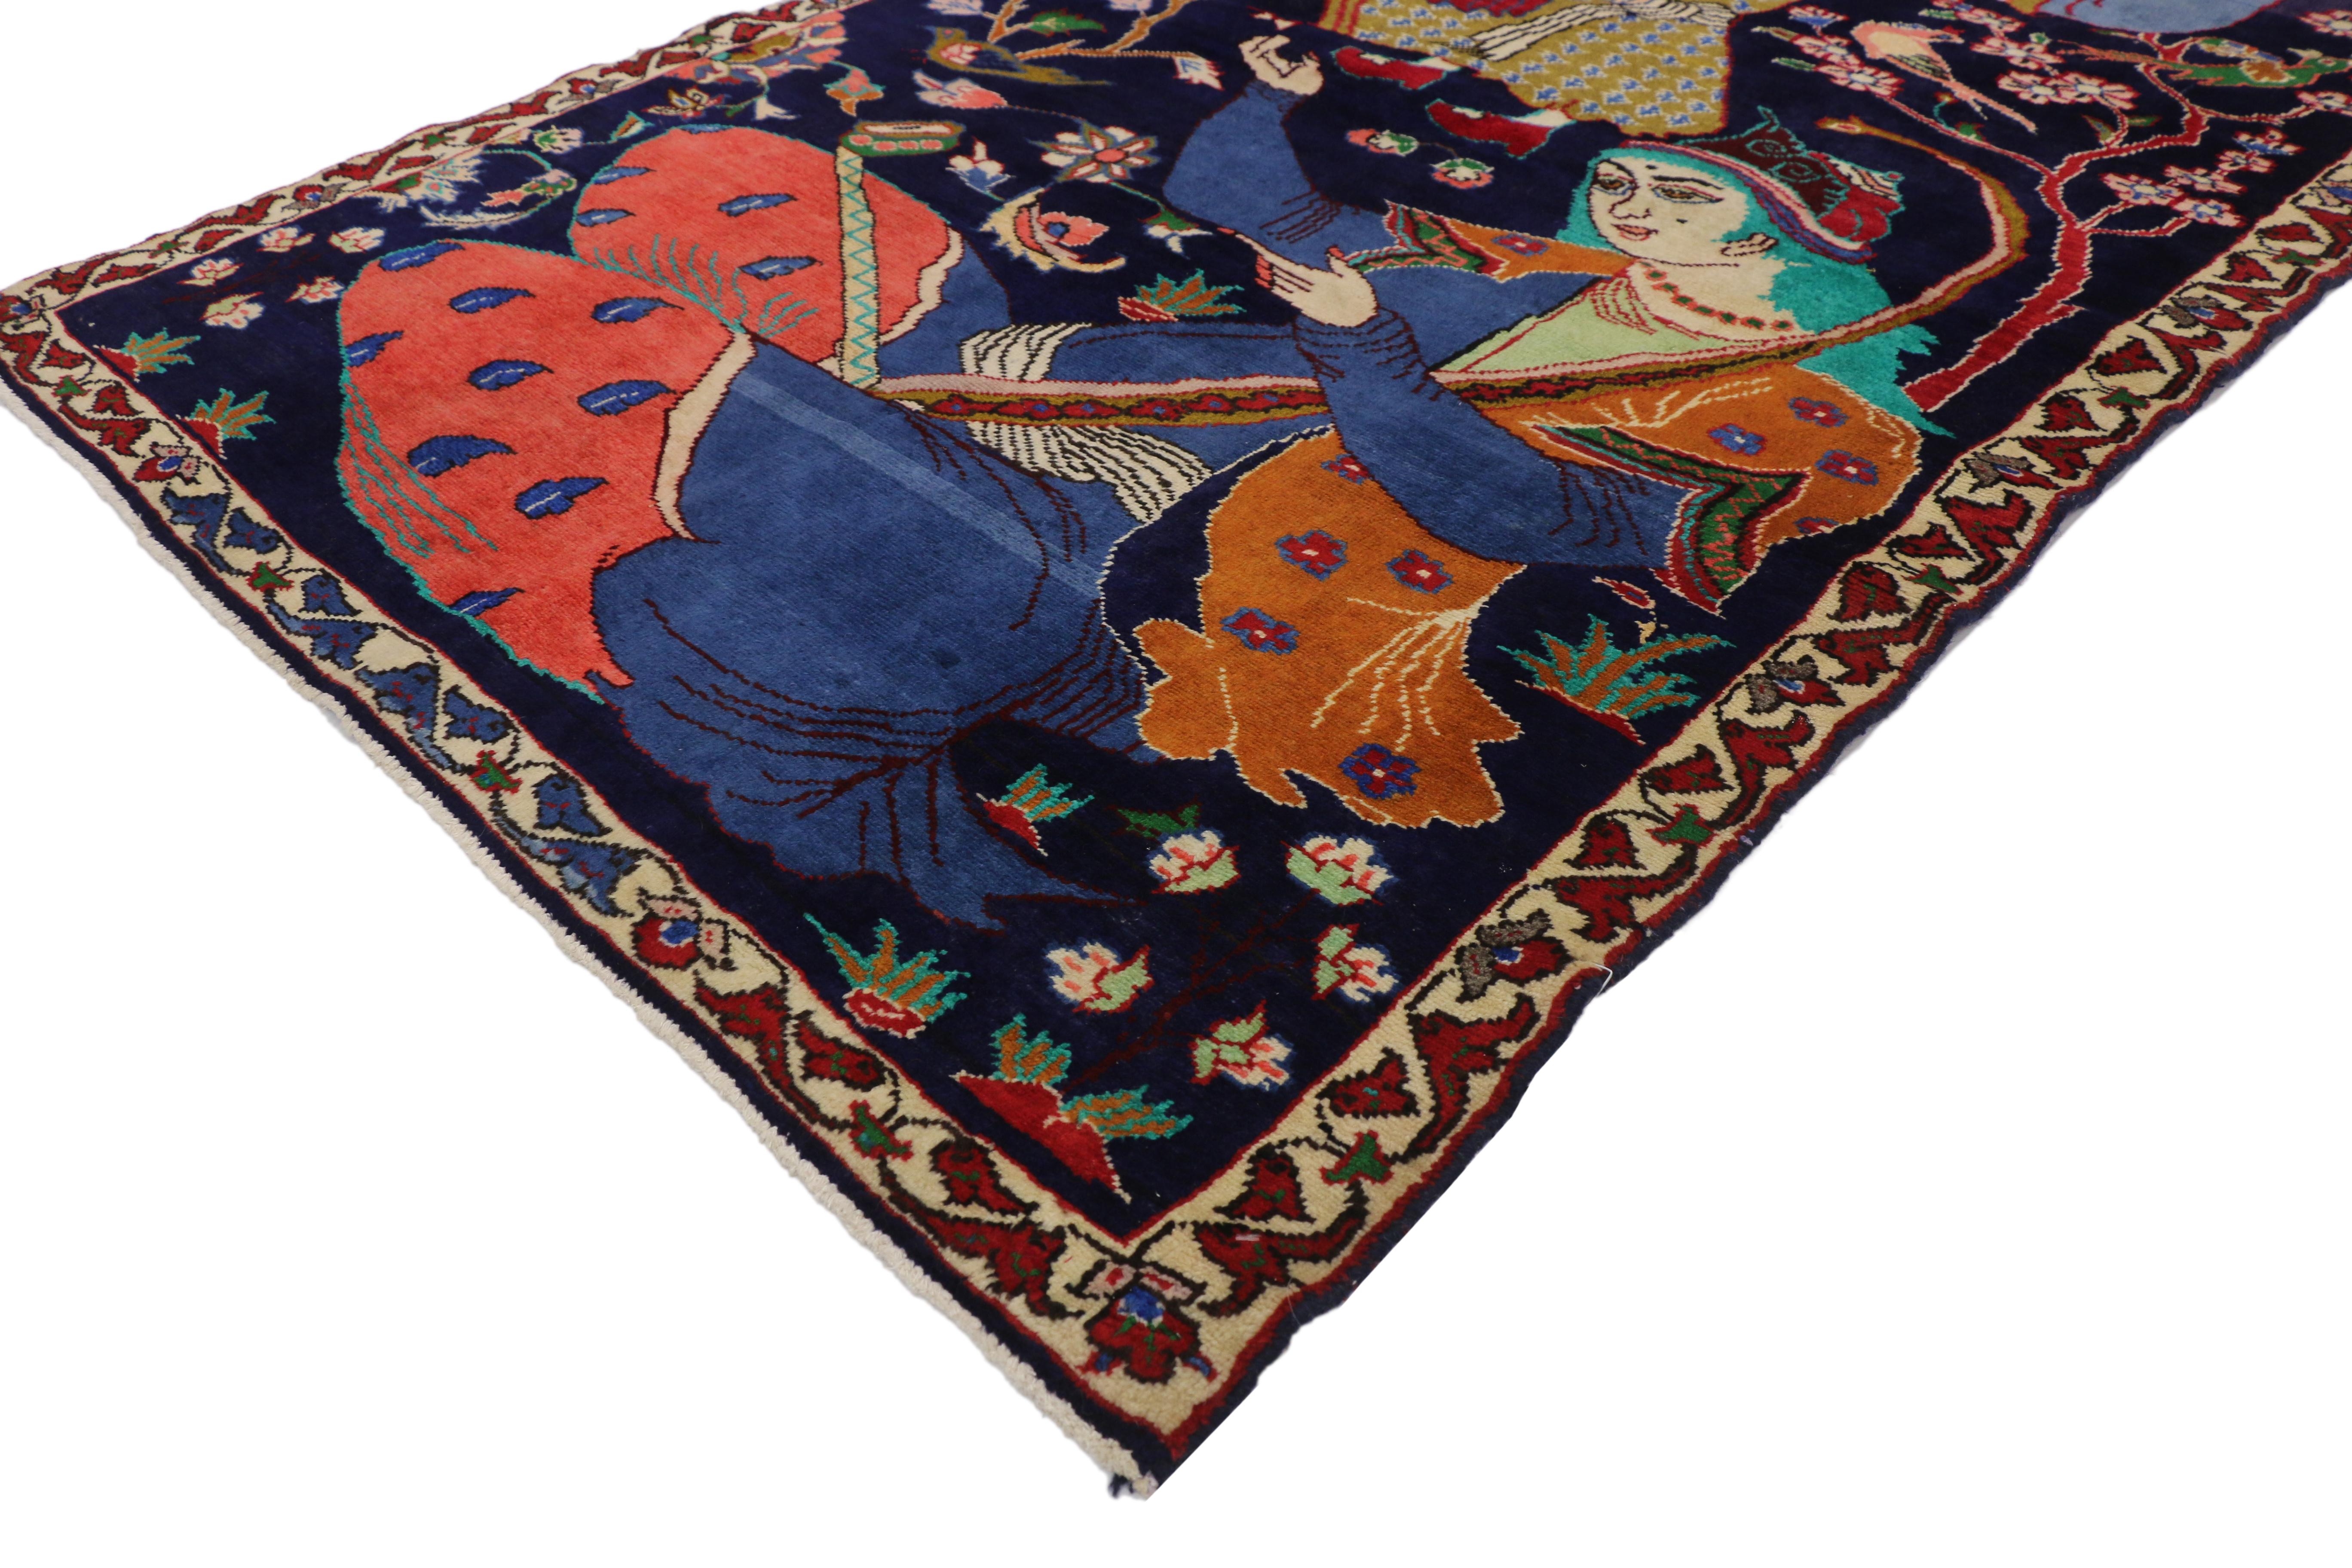 75975, vintage Hamadan Persian rug with Dervish Pictorial, figurative tapestry wall art. Ce tapis pictural persan vintage en laine noué à la main présente une scène de jardin vive et lumineuse d'un derviche avec son maître portant des vêtements